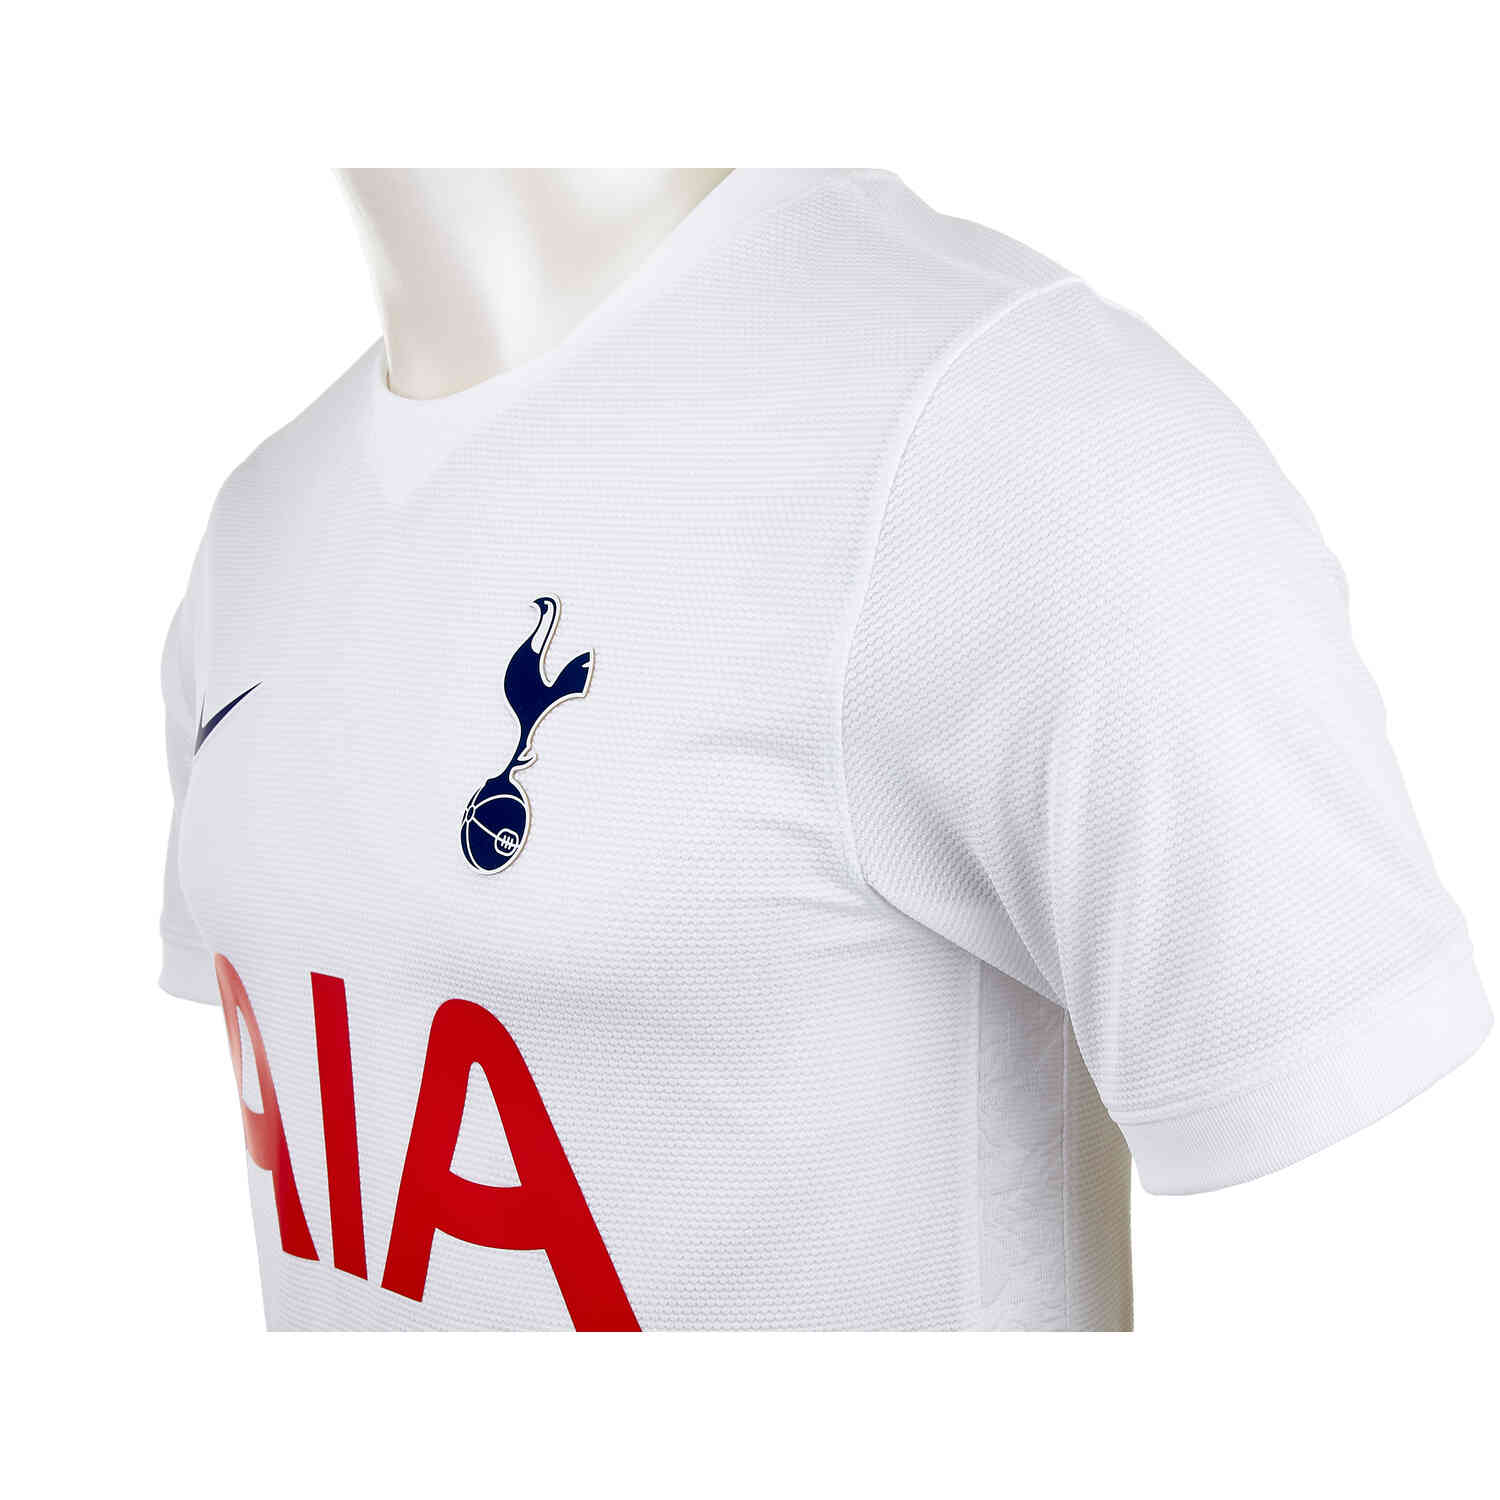 Tottenham Hotspur 2021-22 Home 2 Kit